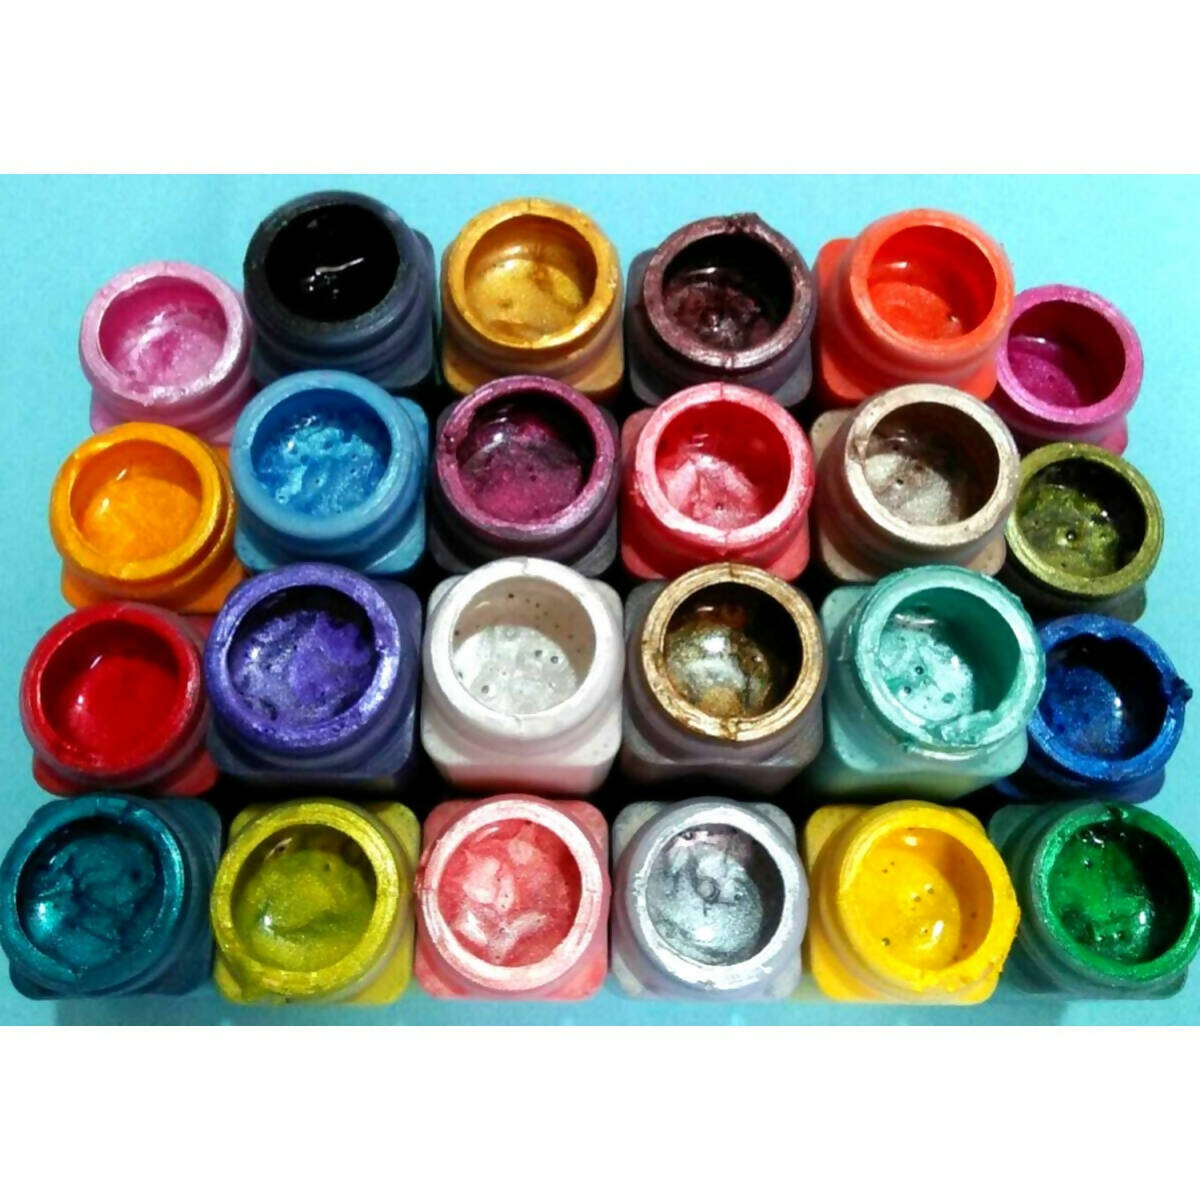 Acrylic Paint - Pack Of 24 - Metallic Liquids - 25ml Each Bottle - Calligraphy - Fabric Paint - Wood Paint - Canvas Paint - Metal Paint